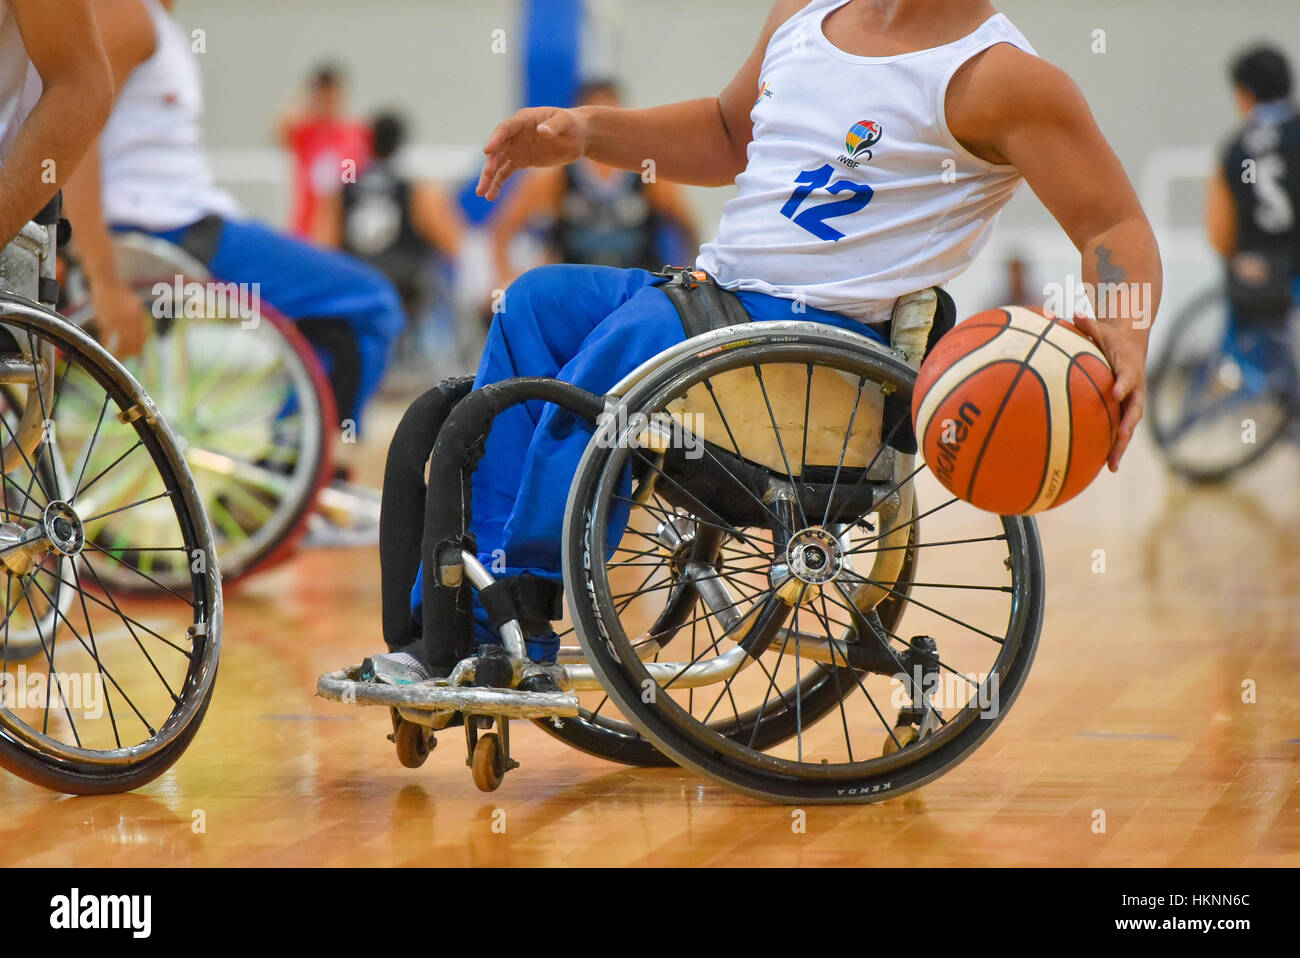 Buenos Aires, Argentine. 27 Jan, 2017. Brésil vs Argentine match de basketball en fauteuil roulant au cours des Amériques 2017 du championnat. Banque D'Images